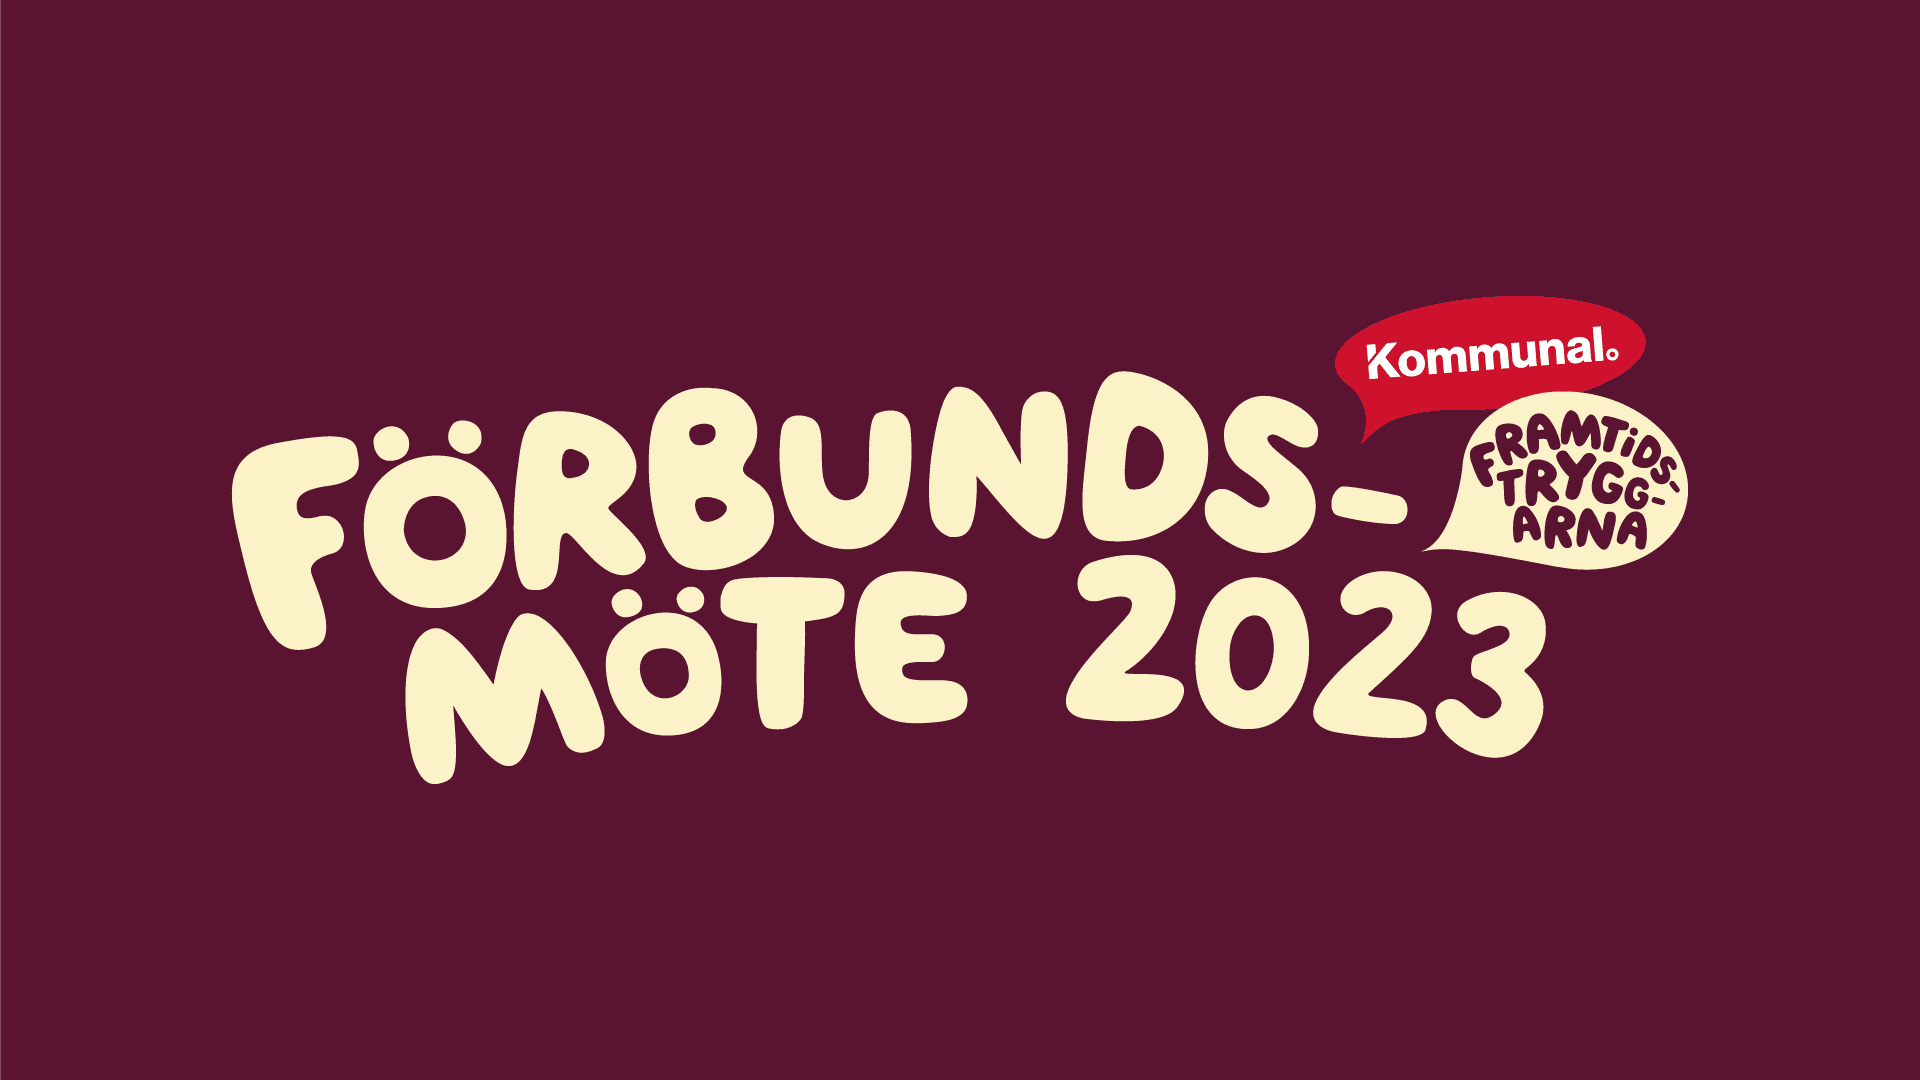 Texten "Förbundsmöte 2023 - Framtidstryggarna" i ljusgul text mot vinröd bakgrund